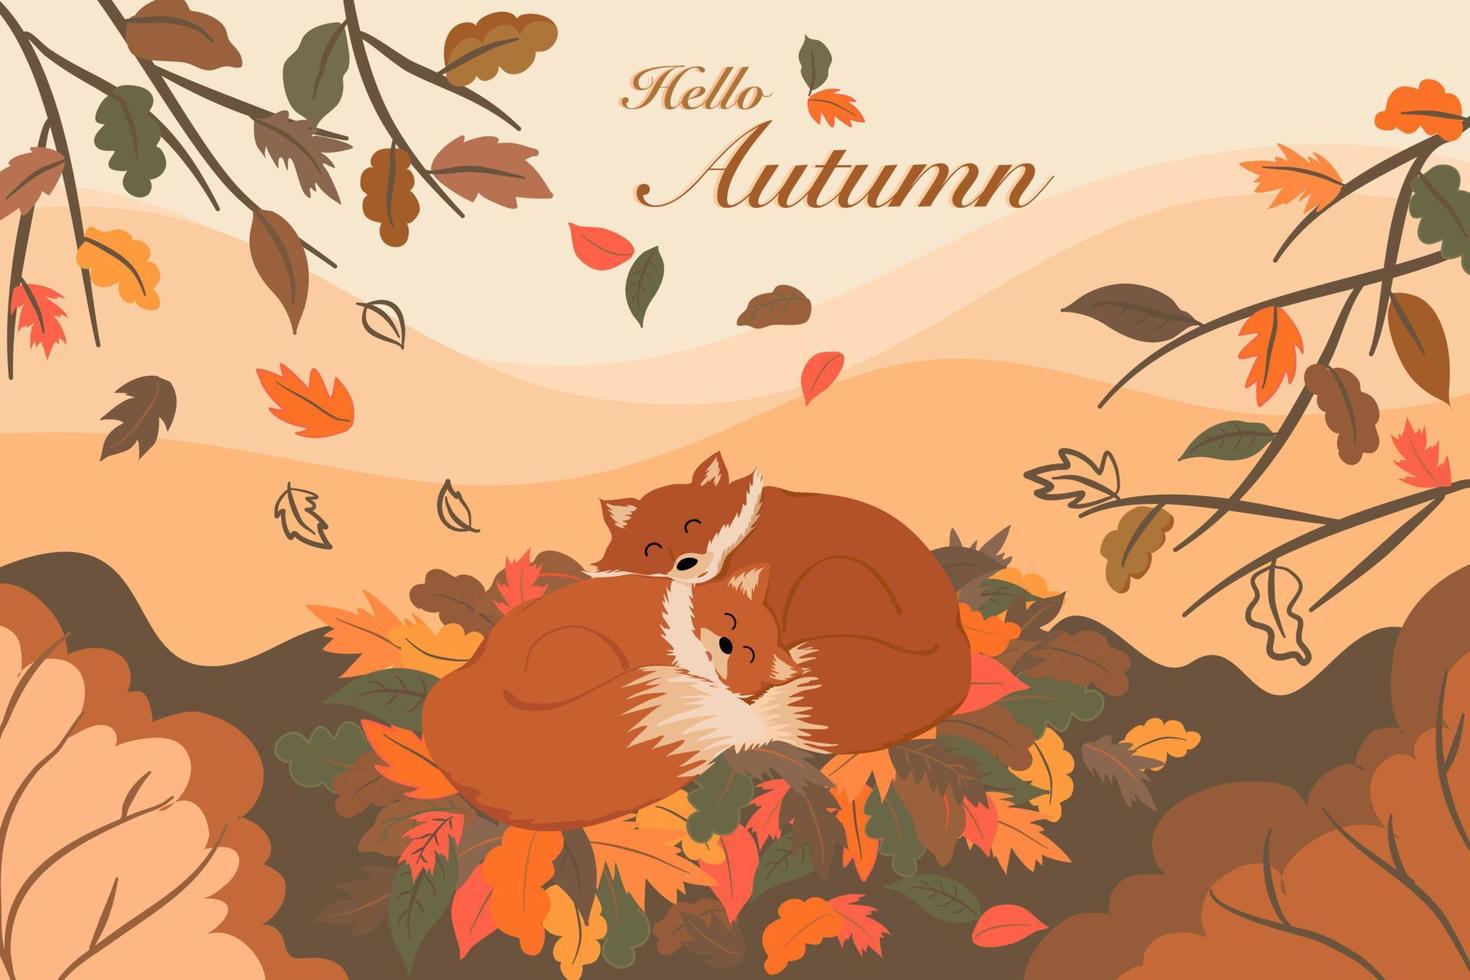 vetor de raposas adormecidas em folhas marrons, laranja no desenho da temporada de outono, paisagem de árvores, floresta, cenário de montanha com olá textos de outono para cartão postal de férias, fundo de convite